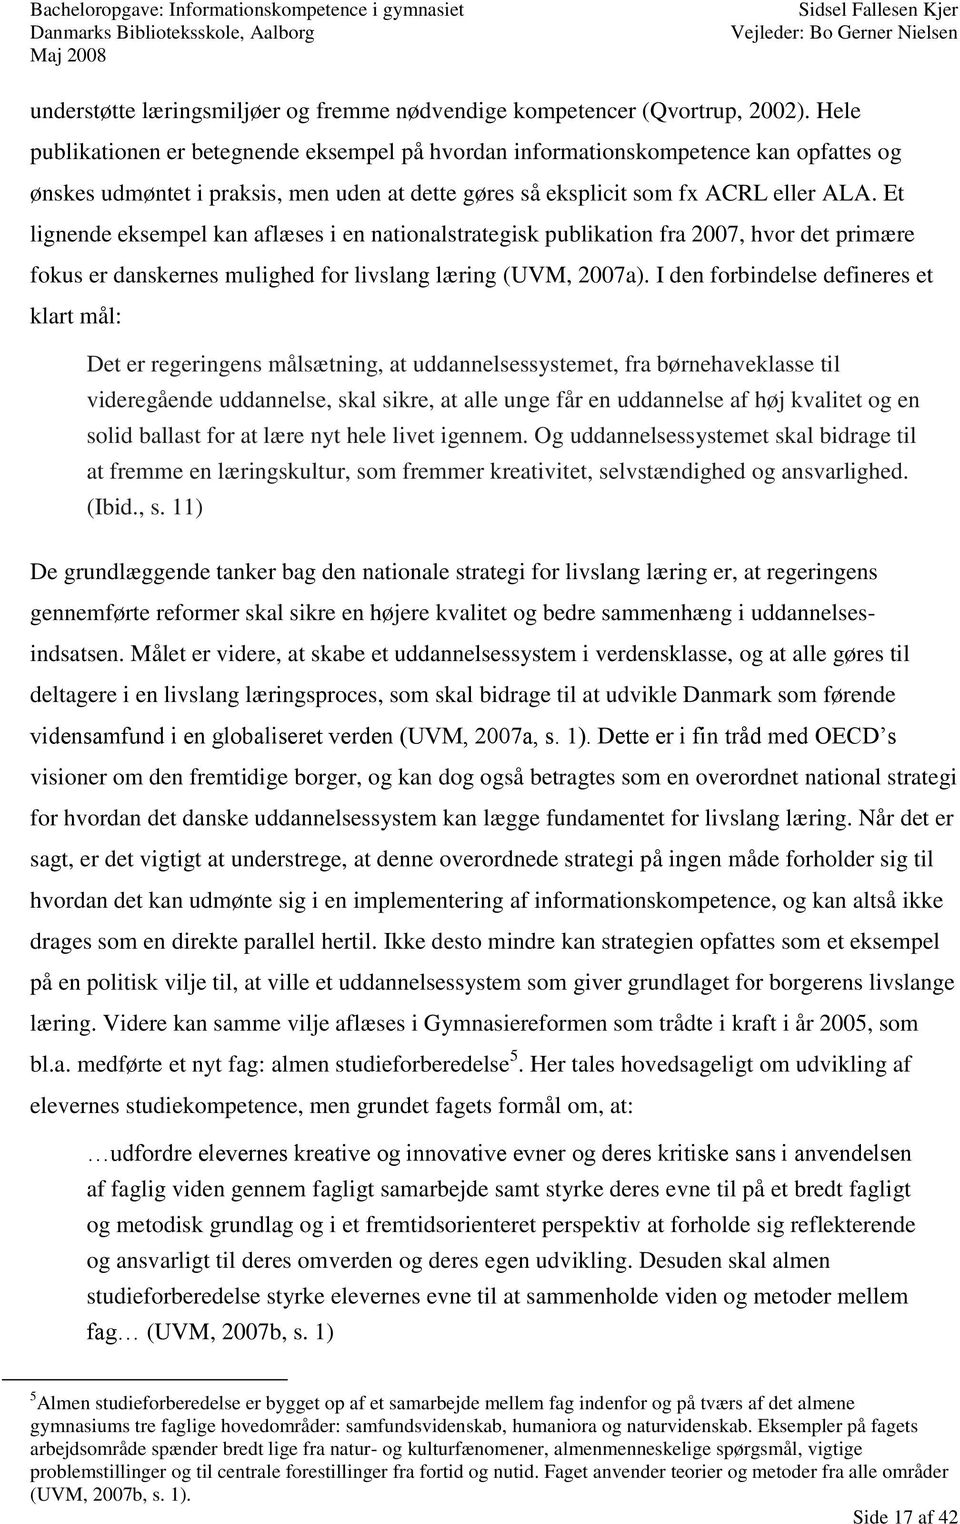 Et lignende eksempel kan aflæses i en nationalstrategisk publikation fra 2007, hvor det primære fokus er danskernes mulighed for livslang læring (UVM, 2007a).